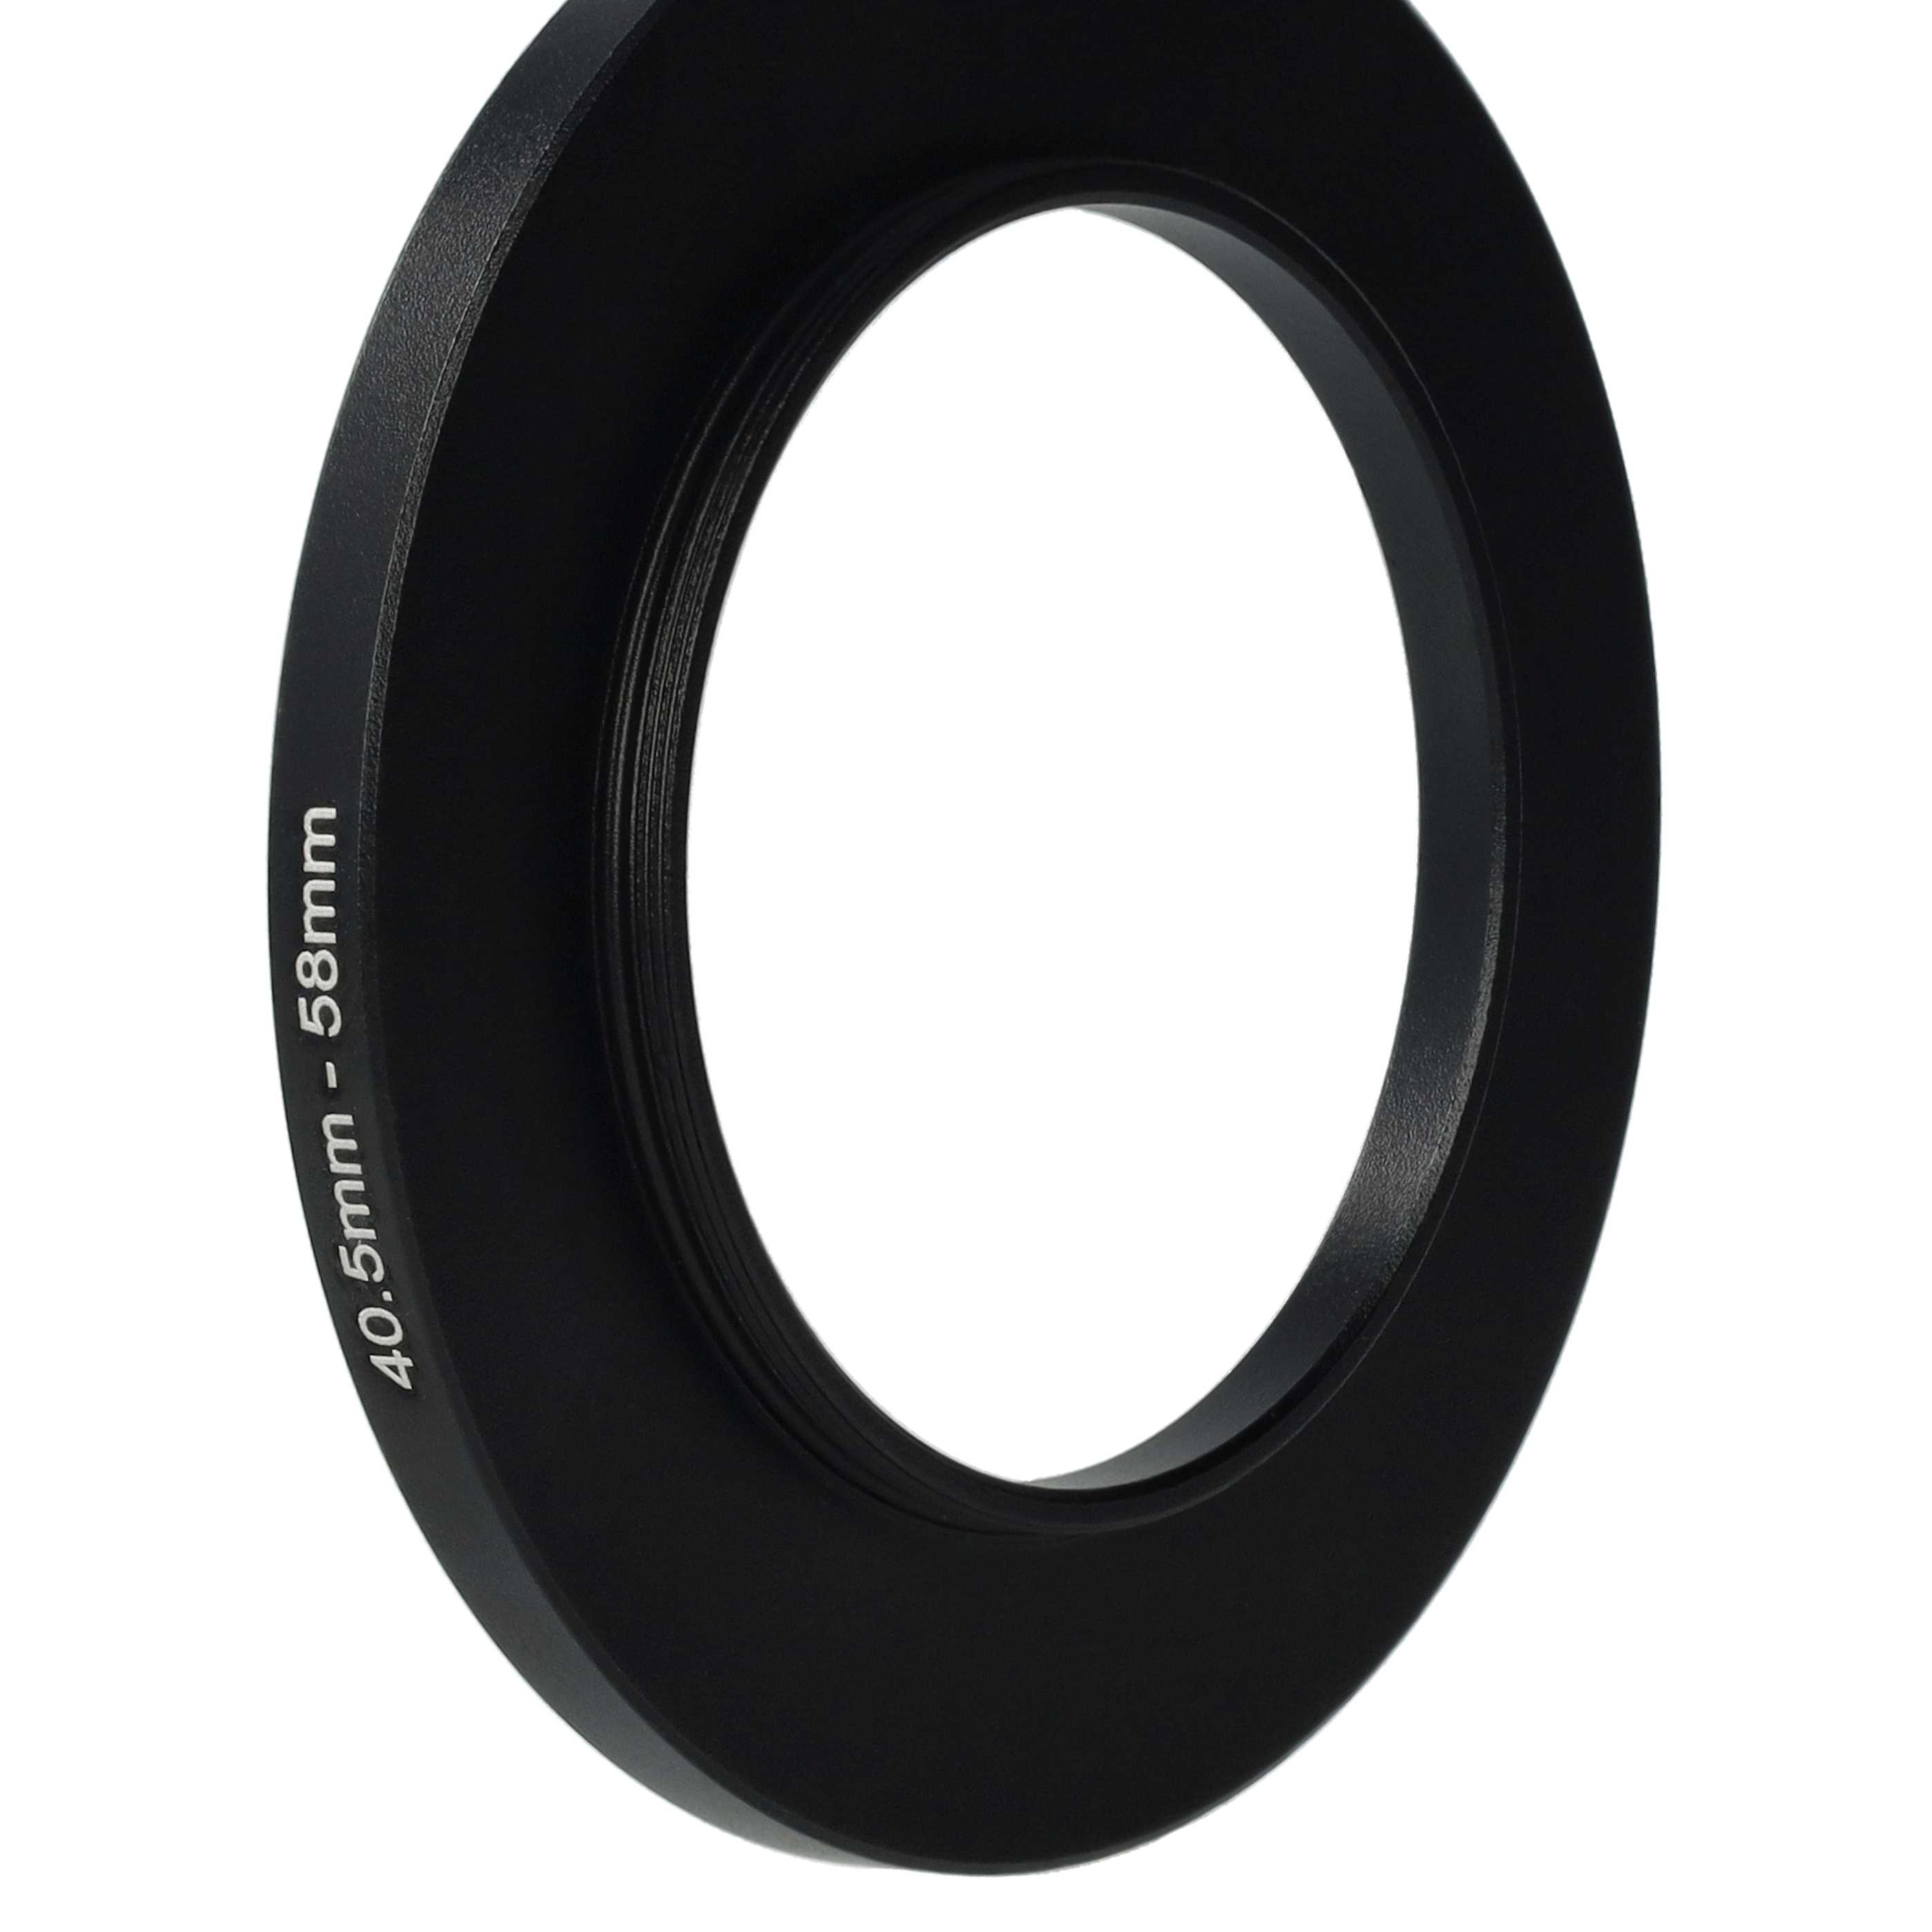 Bague Step-up 40,5 mm vers 58 mm pour divers objectifs d'appareil photo - Adaptateur filtre